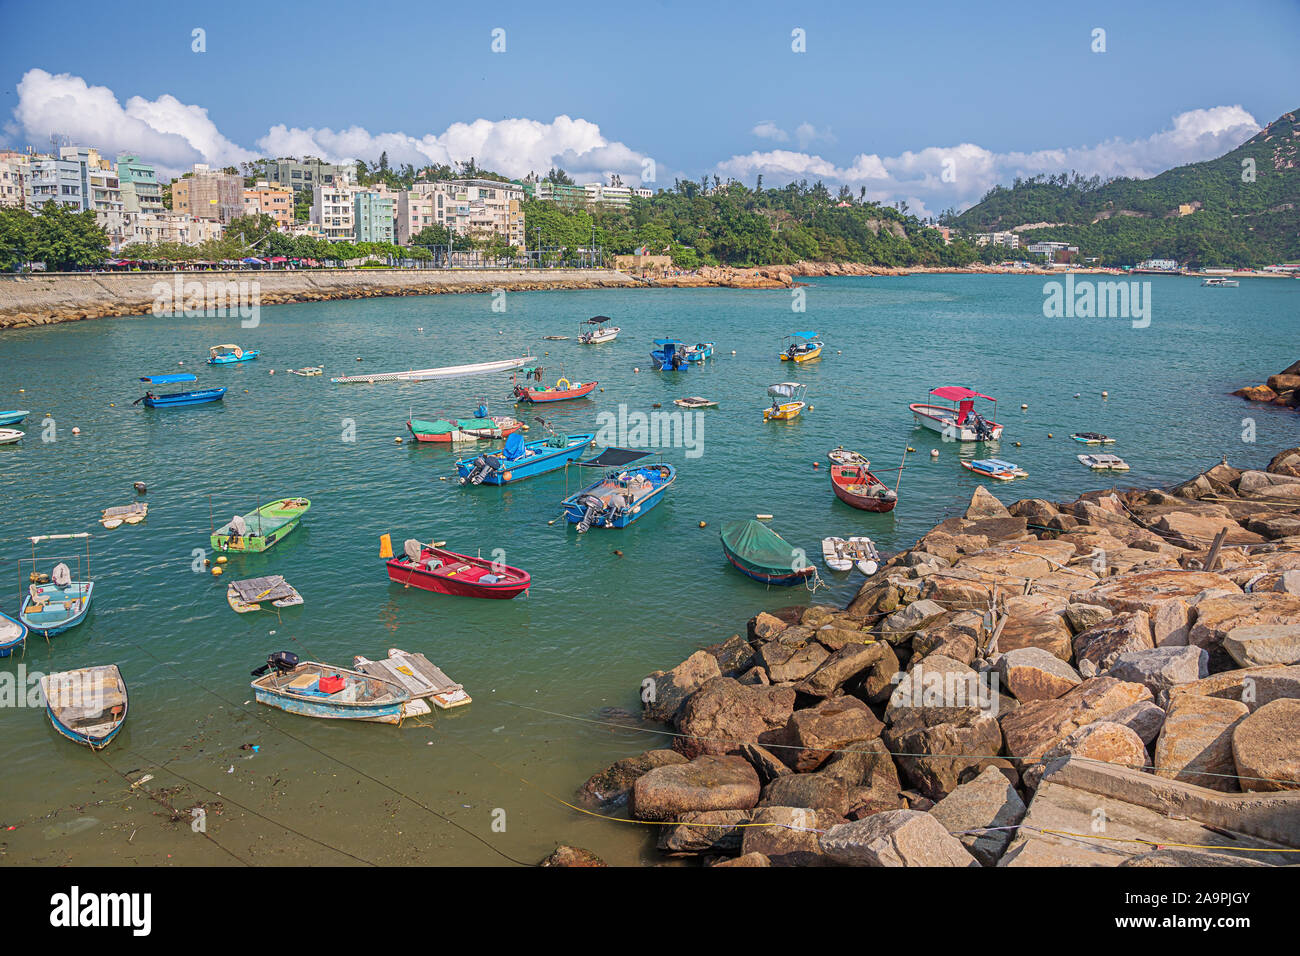 Editorial: HONG KONG, CHINA, April 22, 2019 - Small boats moored at the jetty in Repulse Bay in Hong Kong Stock Photo